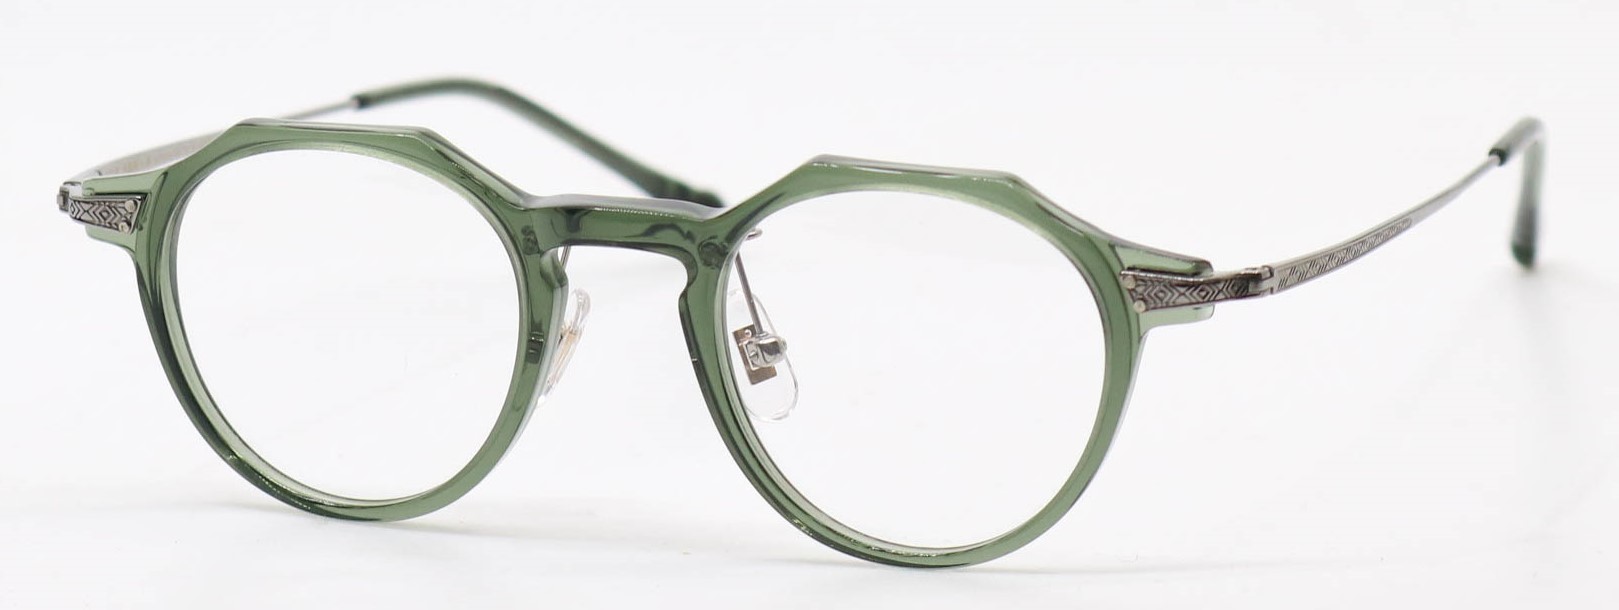 眼鏡のカラータイプC-5 Khaki/Gray